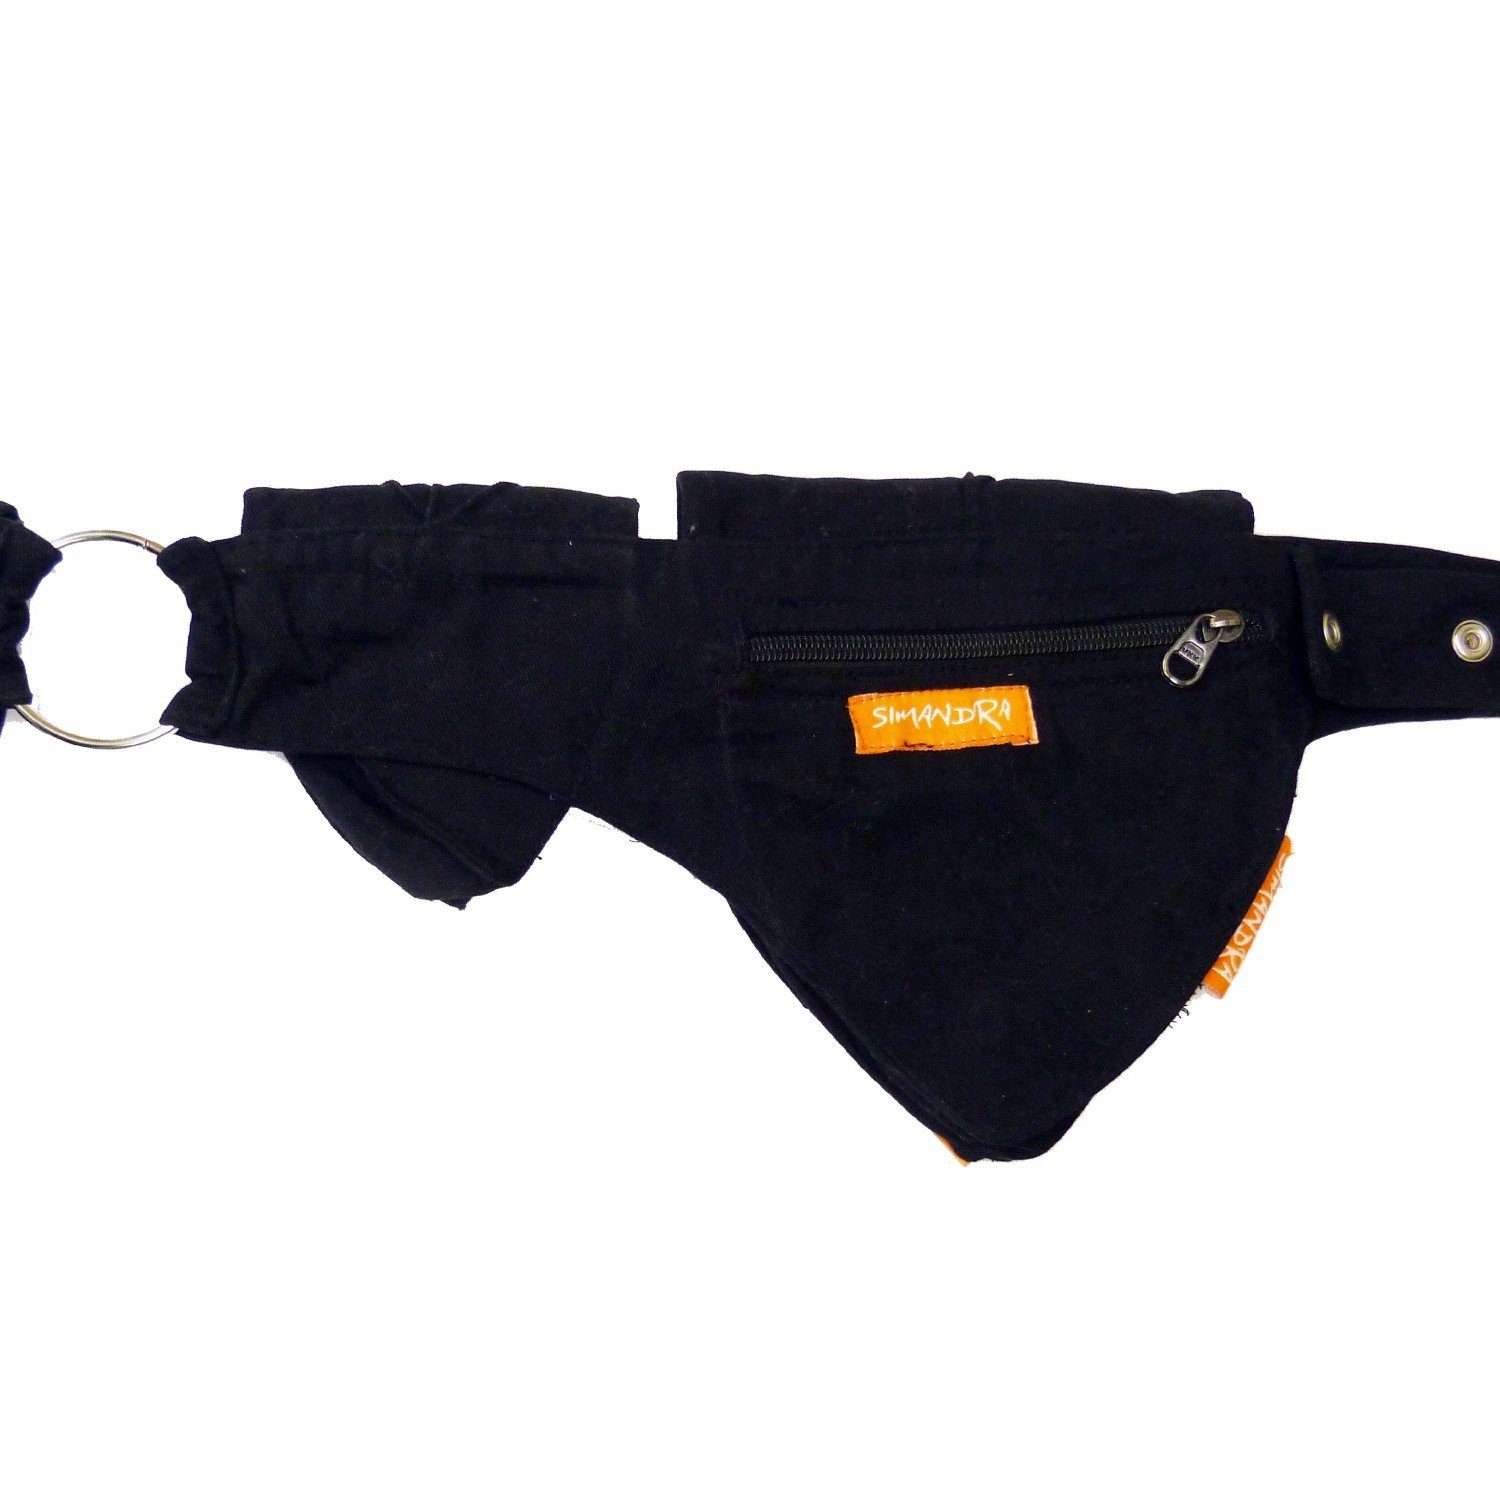 Reißverschluss Schwarz + verstellbar Bauchtasche 4 SIMANDRA individuell I Gürteltasche mit Druckknopf + Hüfttasche Taschen Blatt,